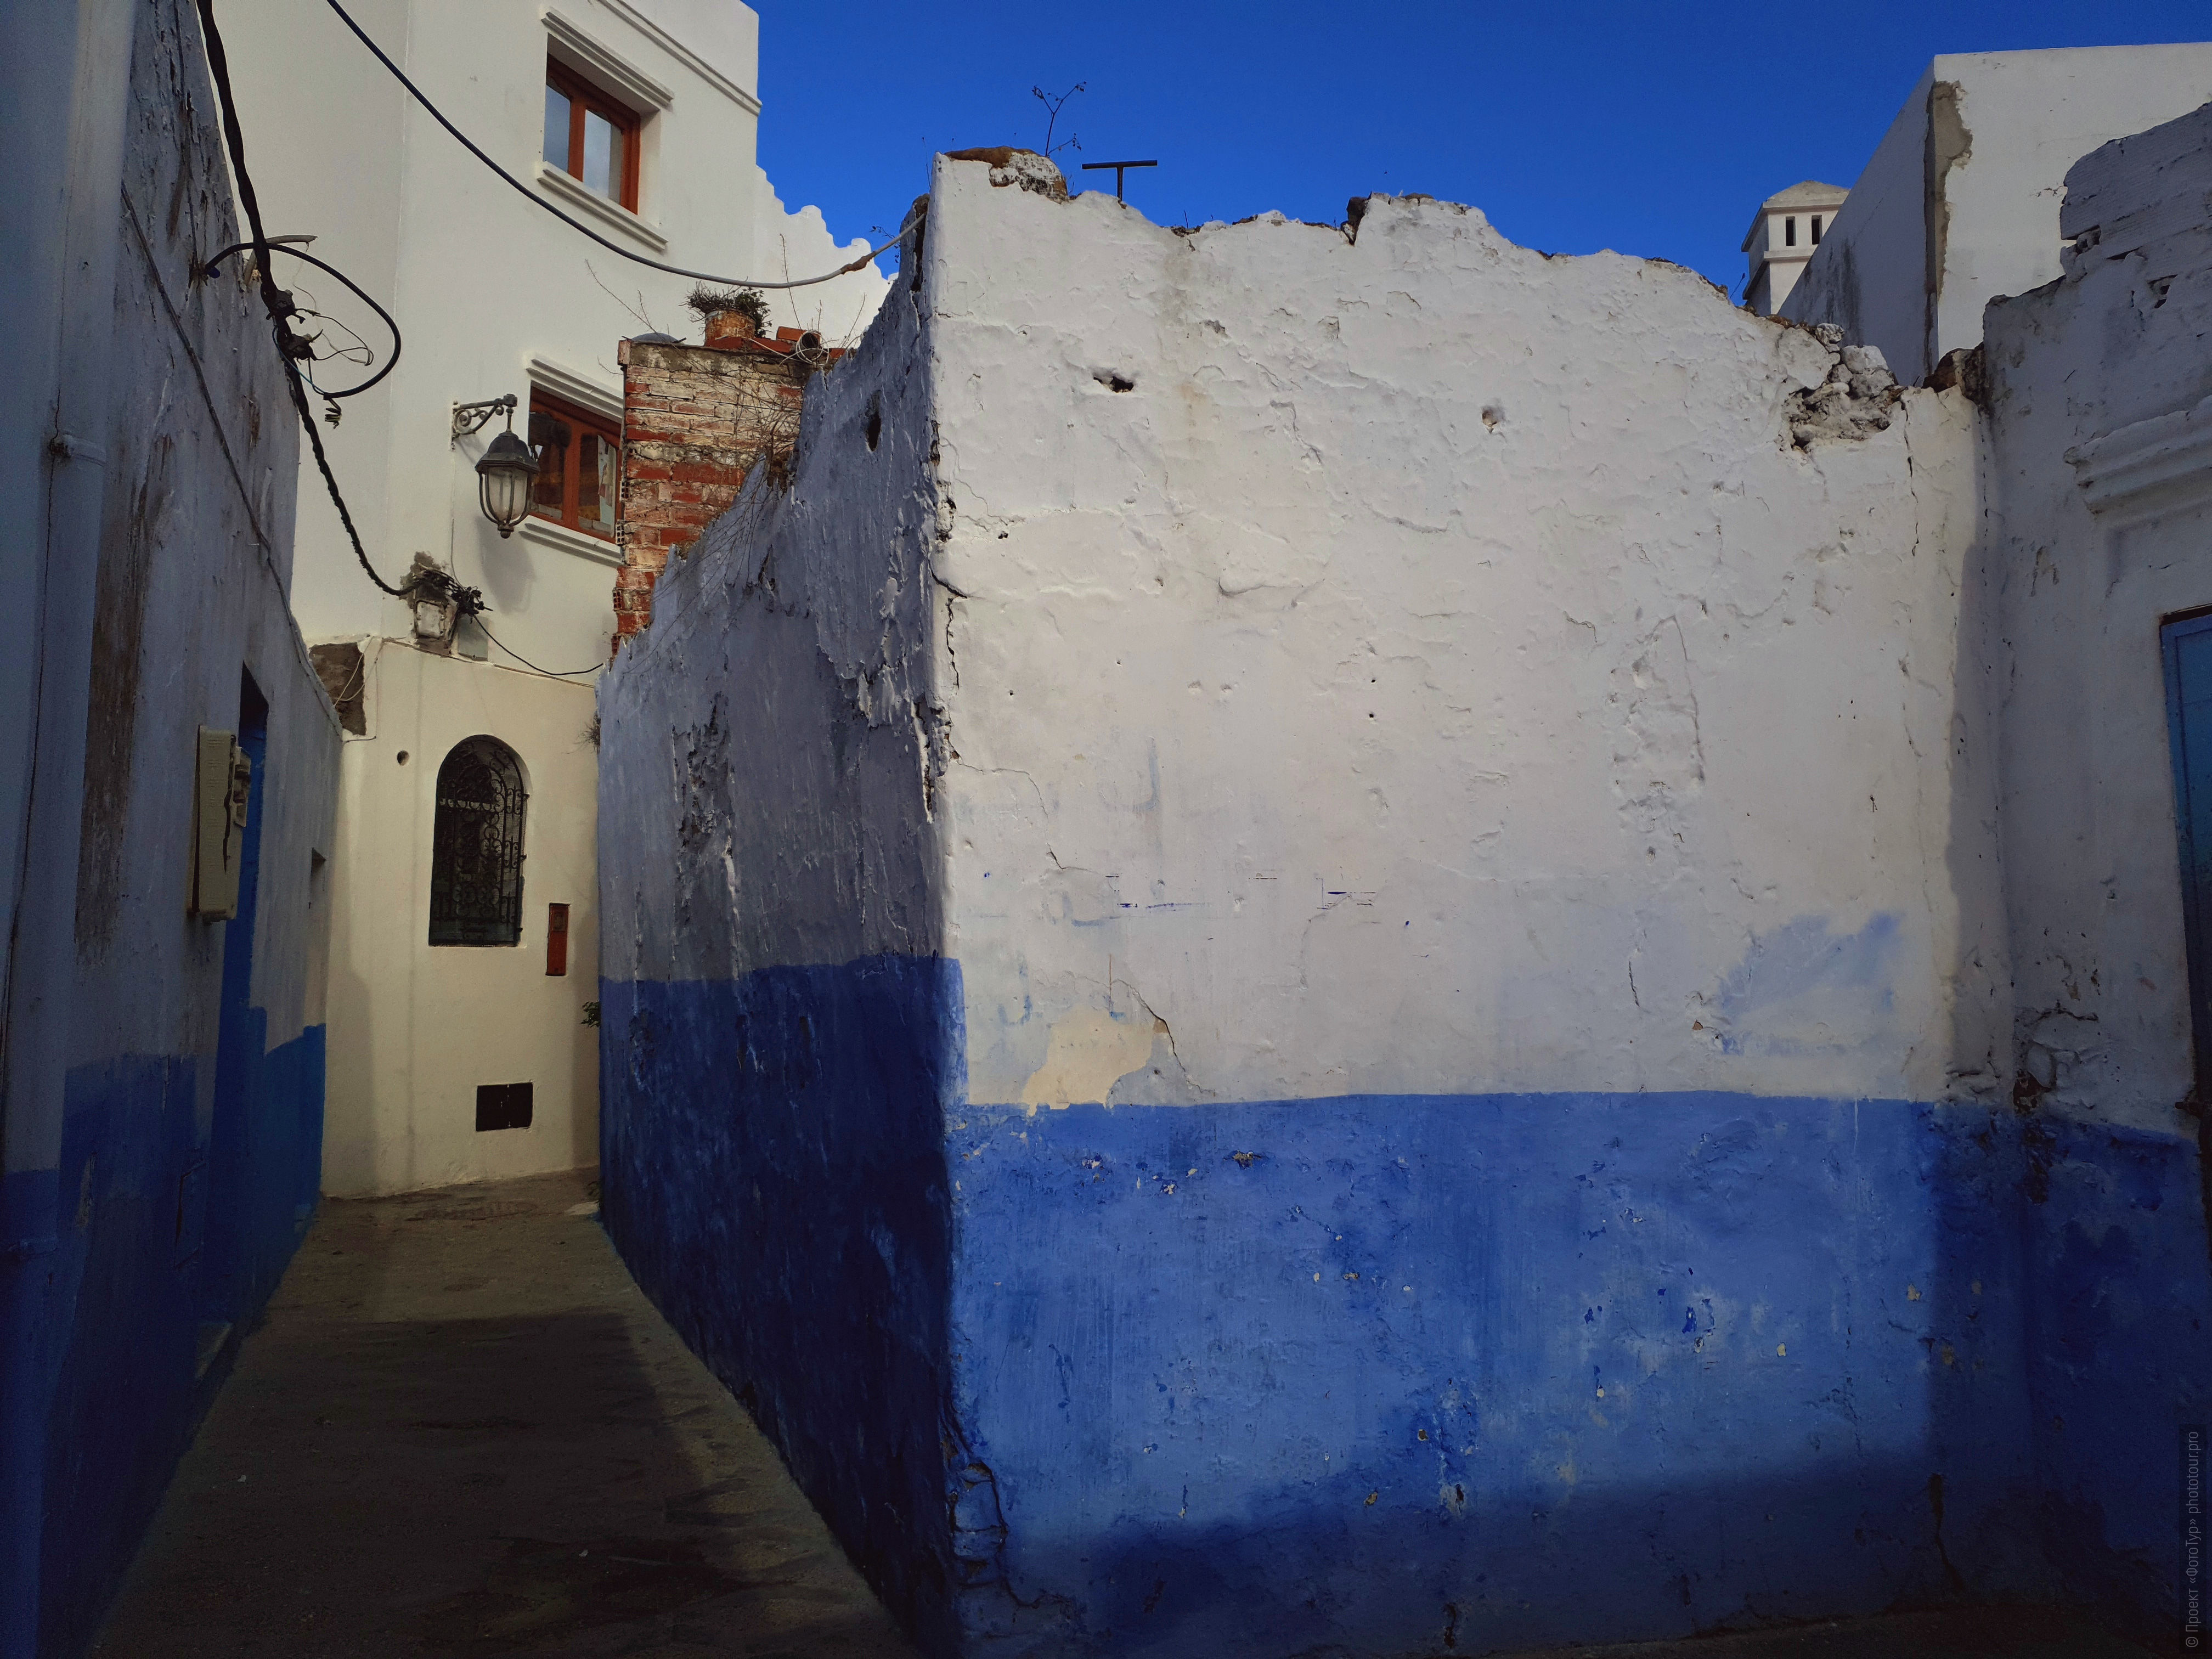 Асила. Фототур в Марокко: медины и порты Марокко, 7 ноября - 18 ноября 2021 года.